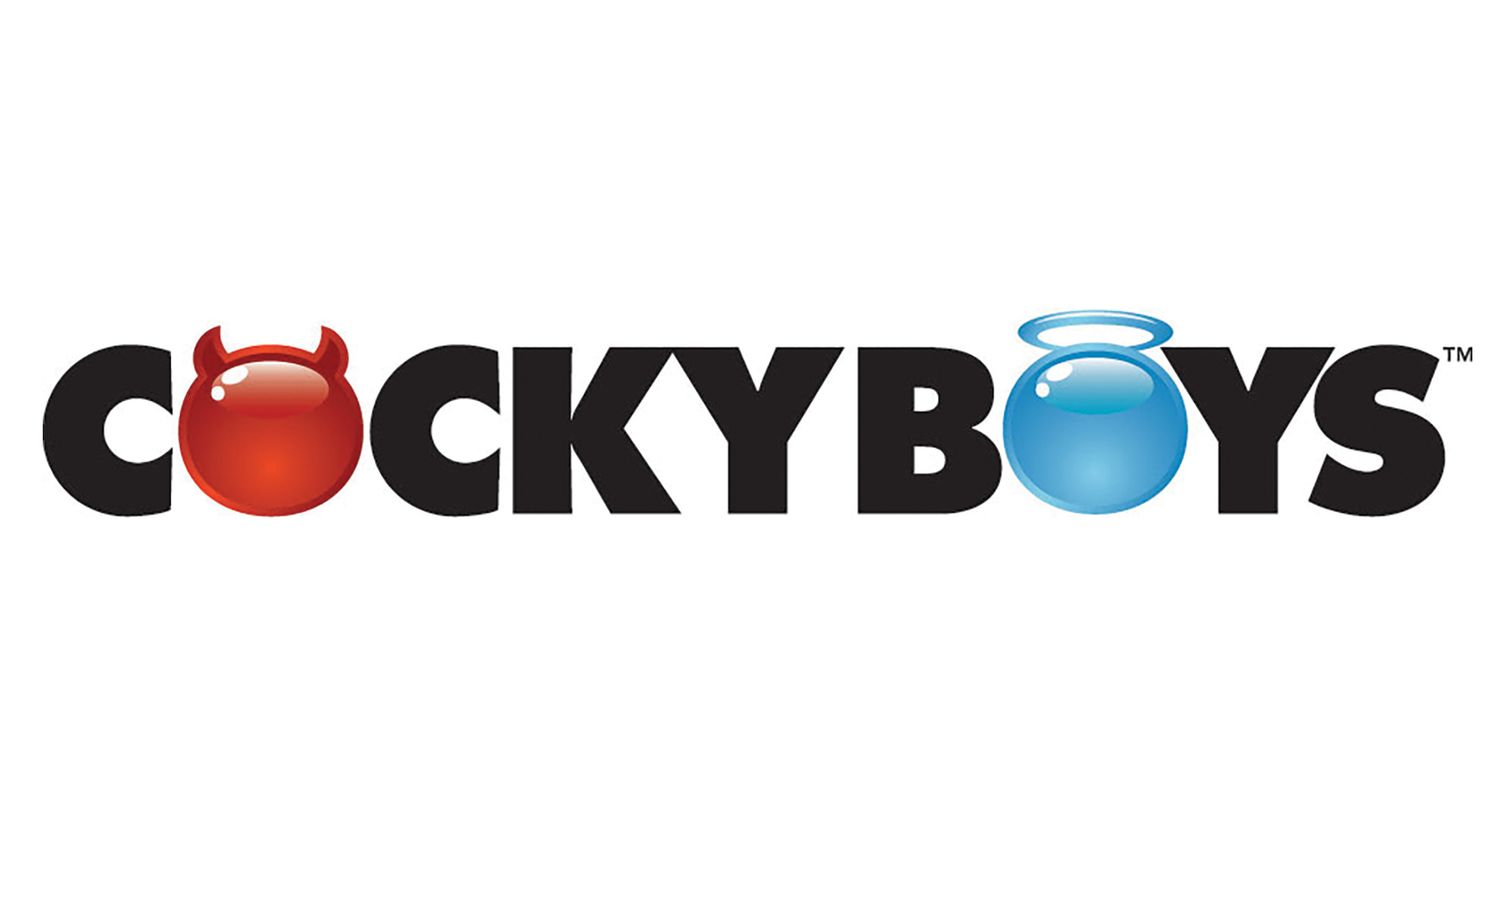 CockyBoys.com